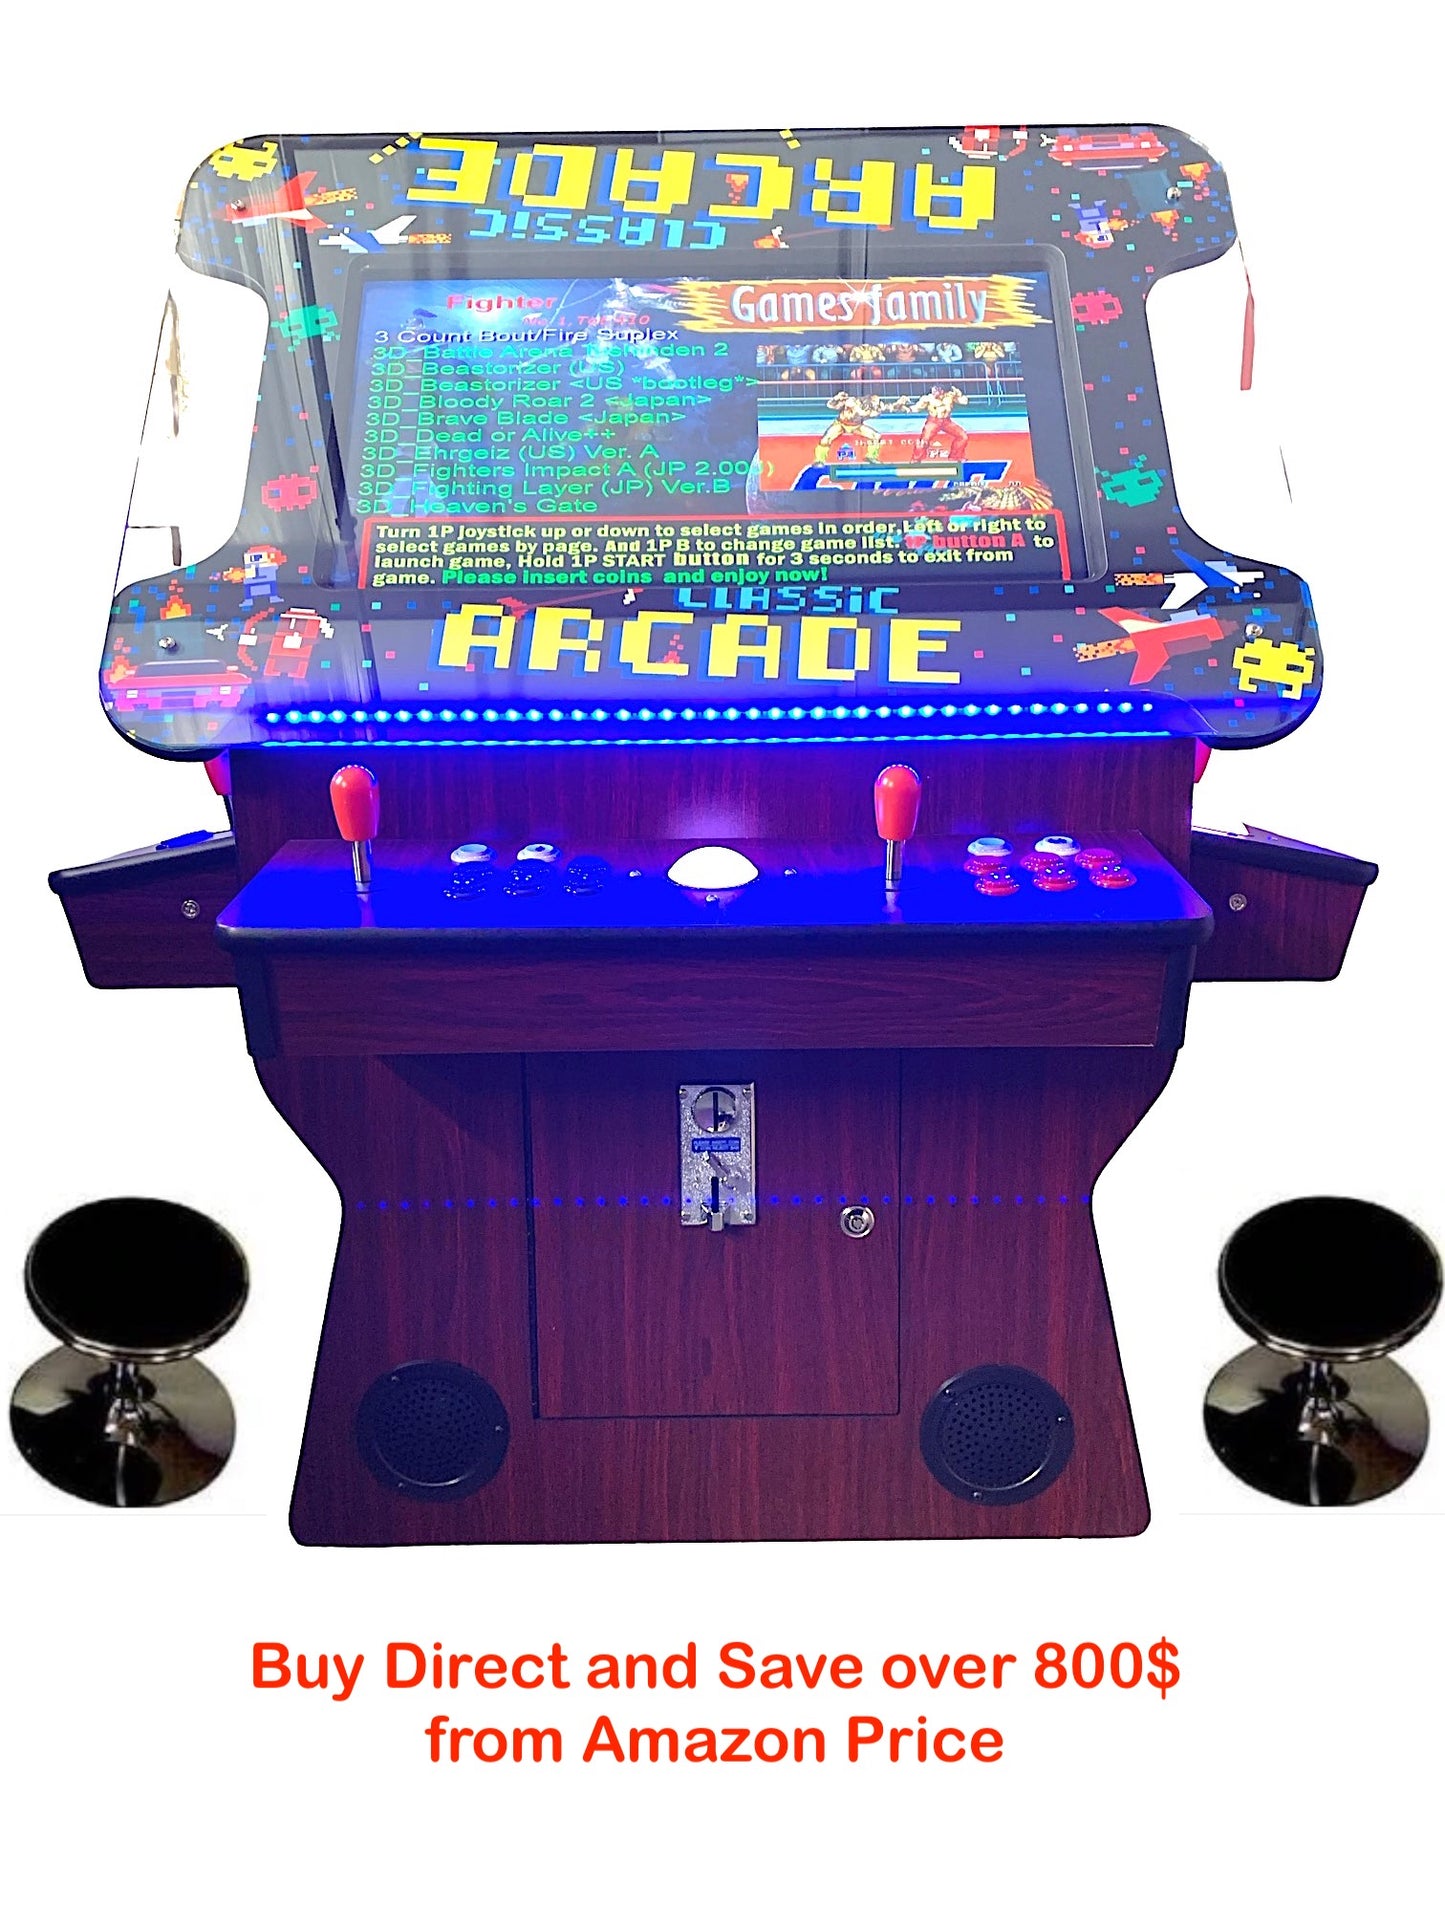 Dark Wood Cocktail Arcade Machine 3505 Games Tilt Up  Retro Multi-cade  Retro Classic Games Table